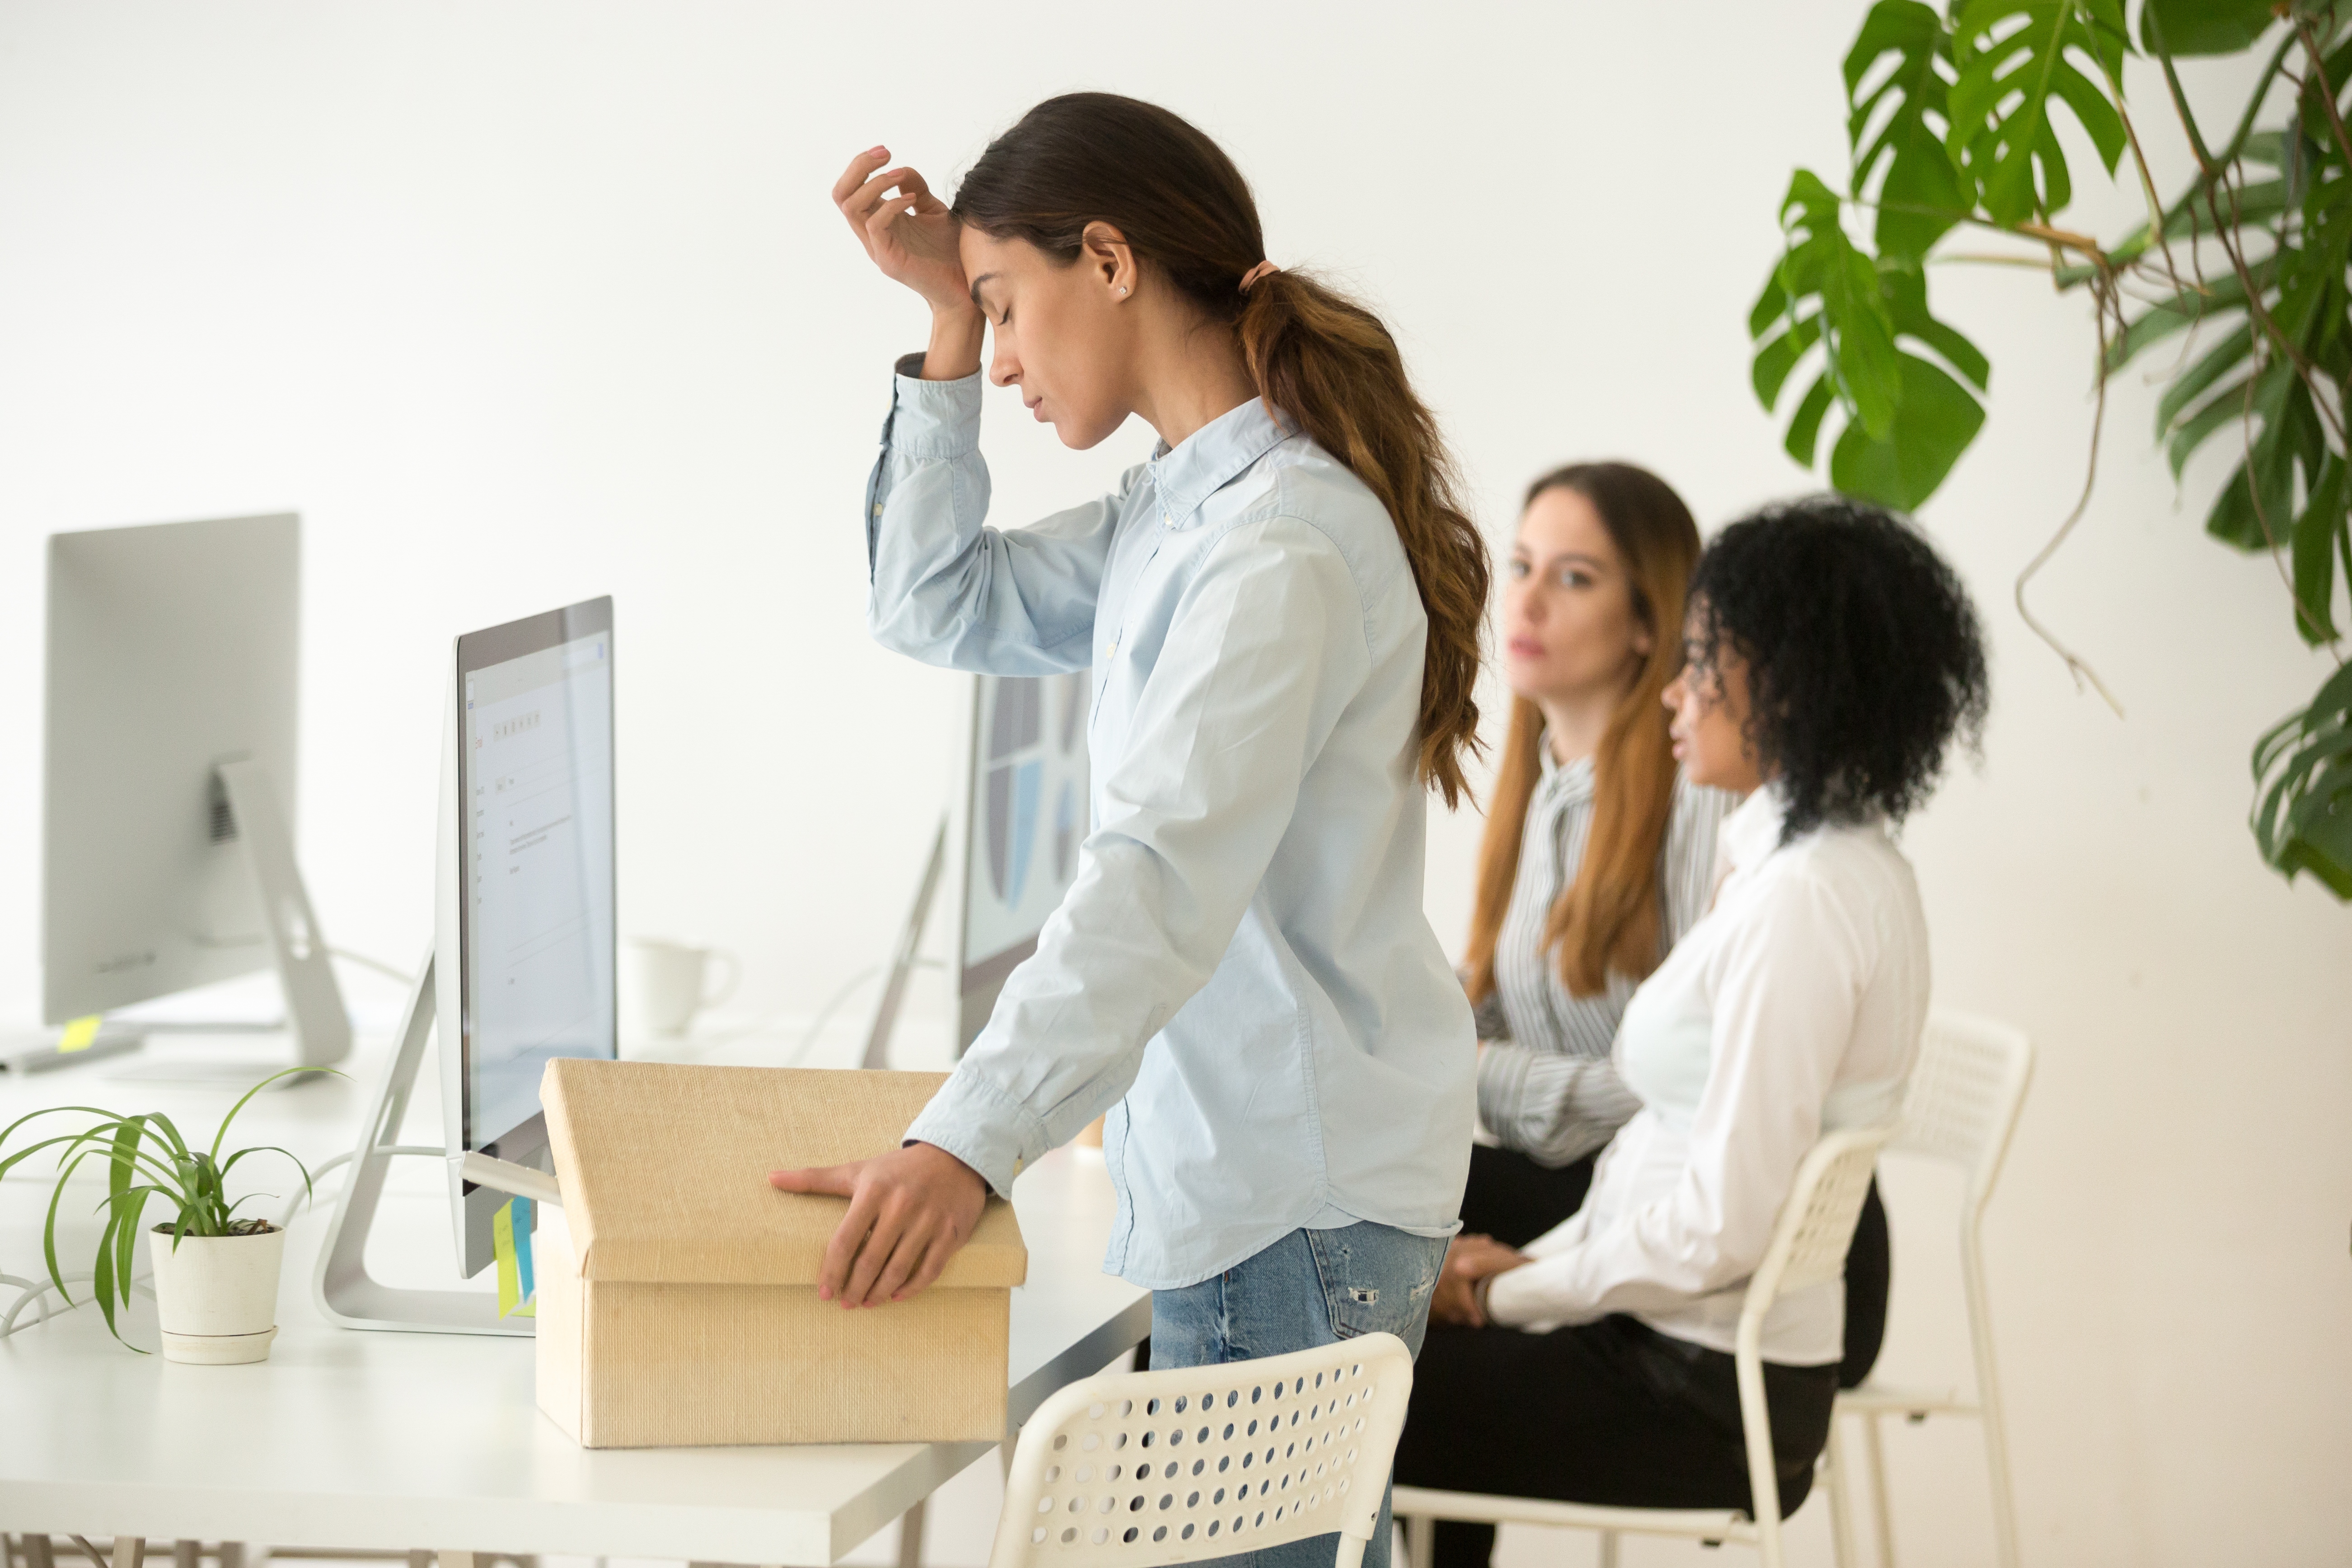 Employée frustrée se préparant à partir après s'être fait renvoyer de son travail | Source : Shutterstock